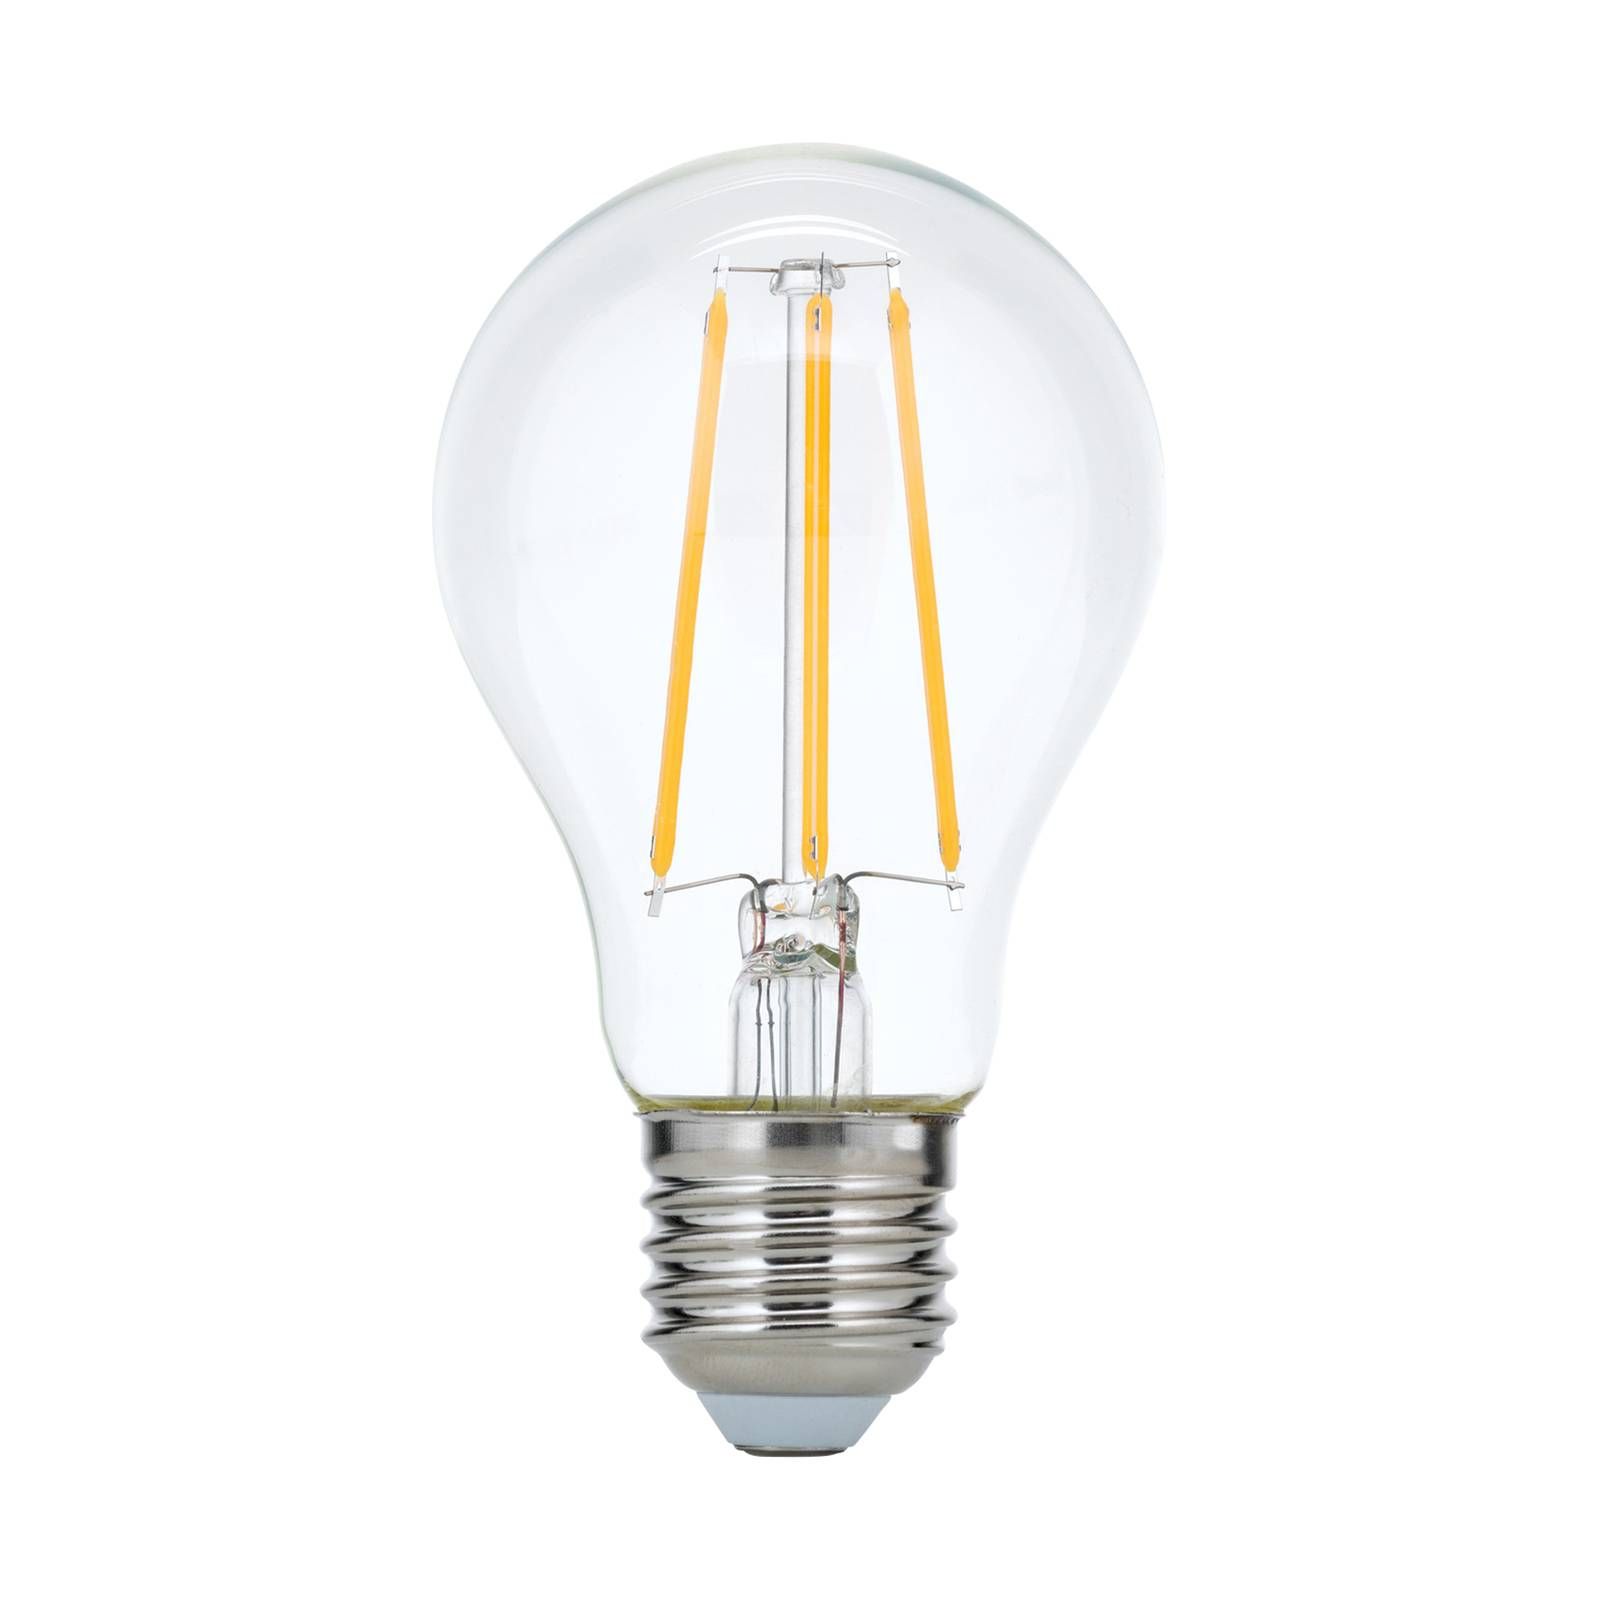 Orion LED žiarovka E27 4, 5W filament číra stmievateľná, sklo, E27, 4.5W, Energialuokka: F, P: 10.5 cm